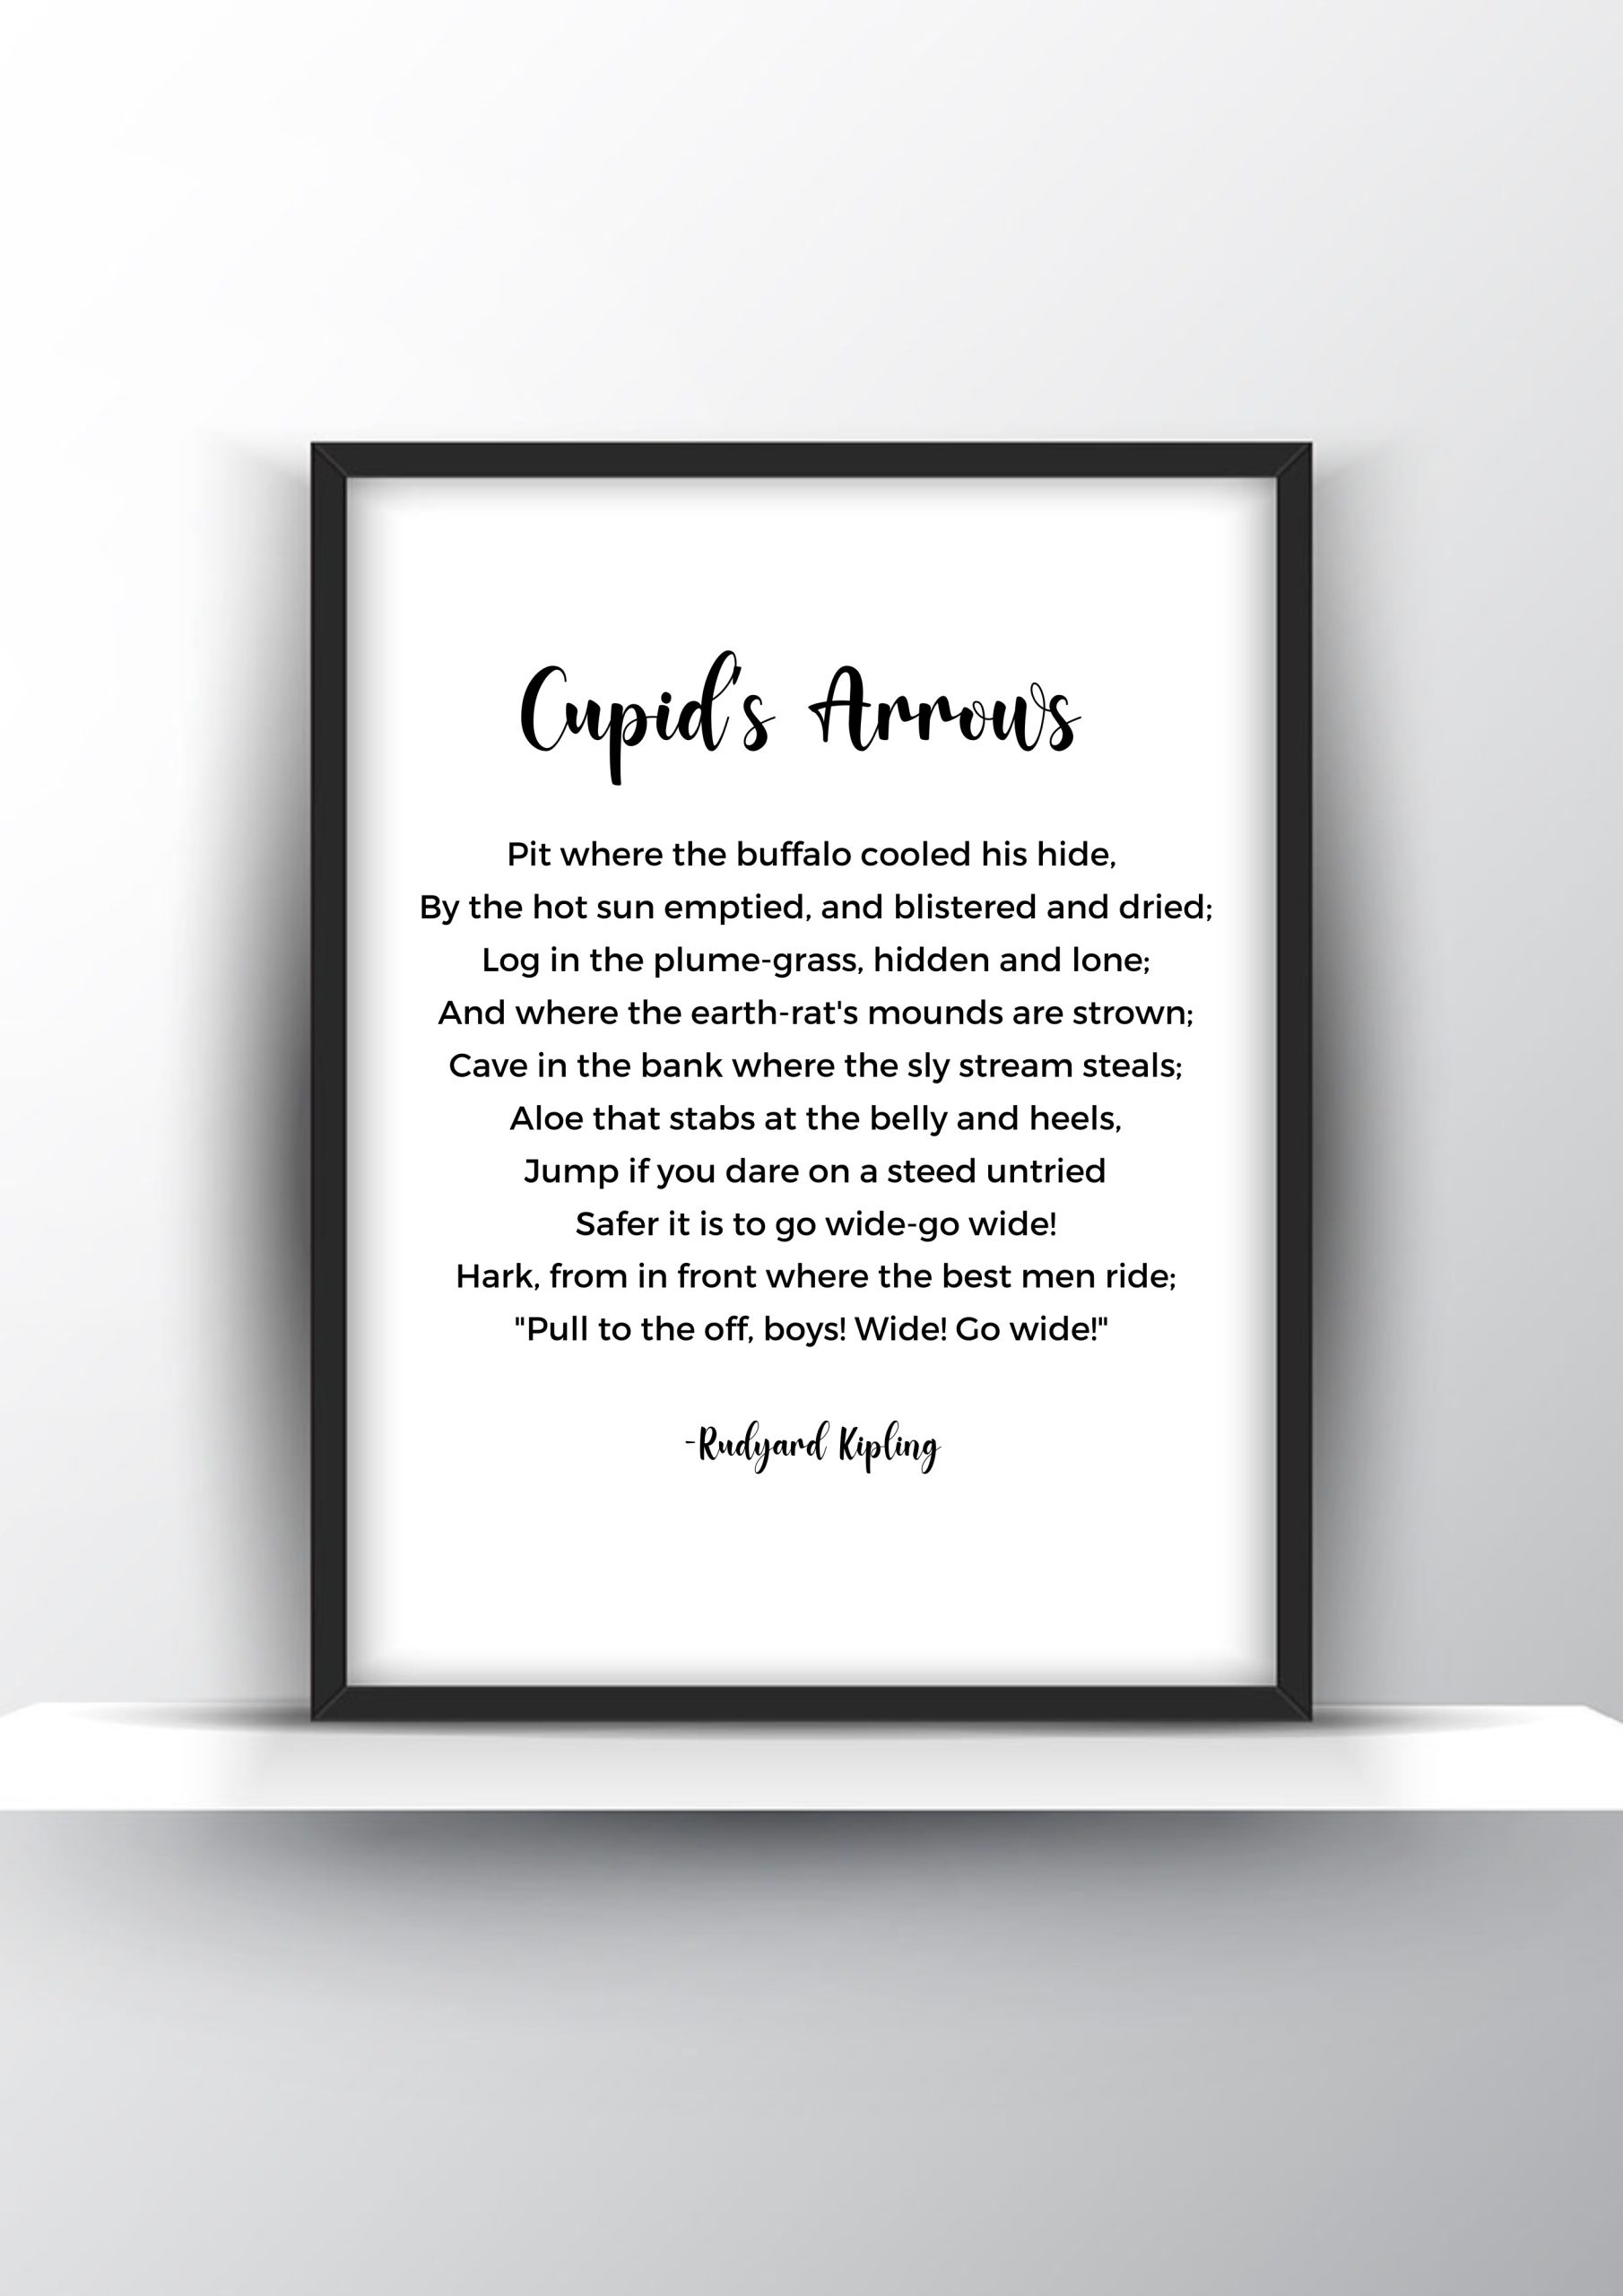 Cupids's Arrows Poem by Rudyard Kipling